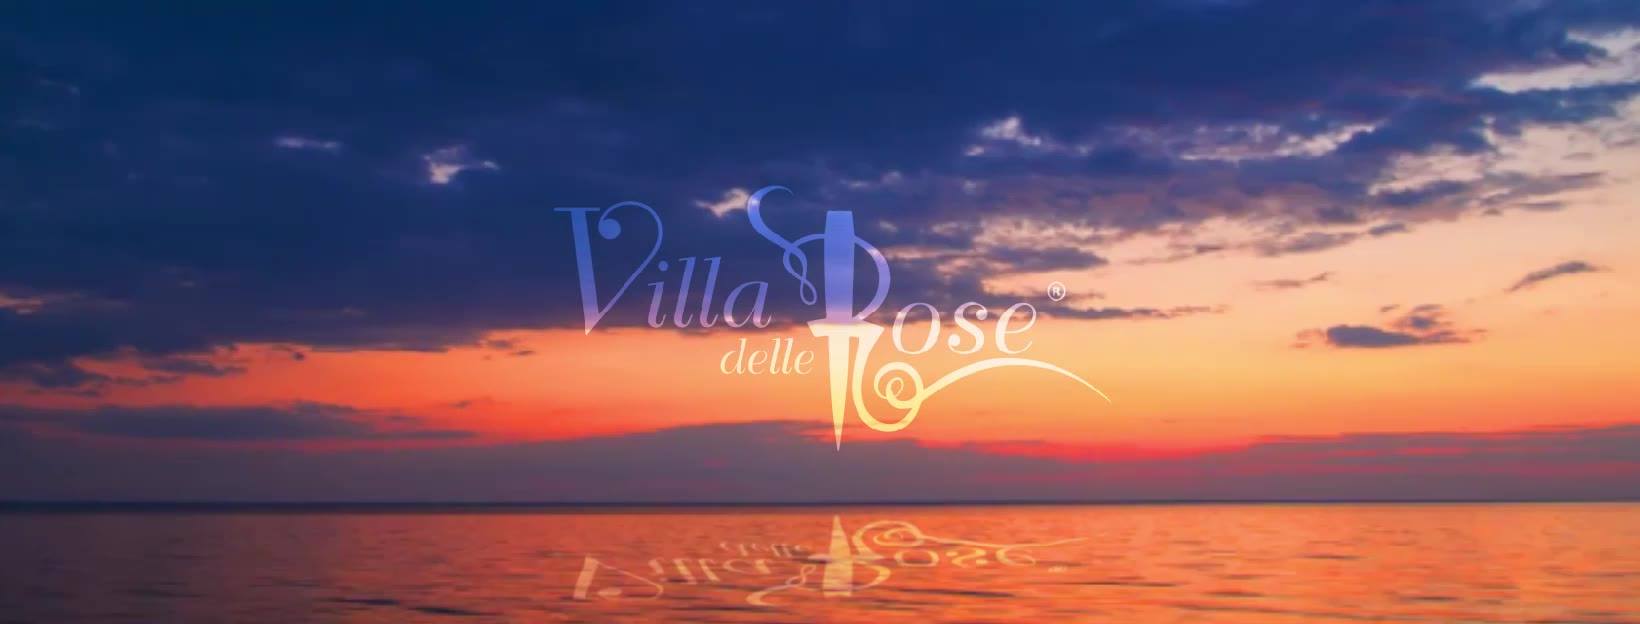 Inaugurazione sabato estate 2019 Villa delle Rose Misano Adriatico